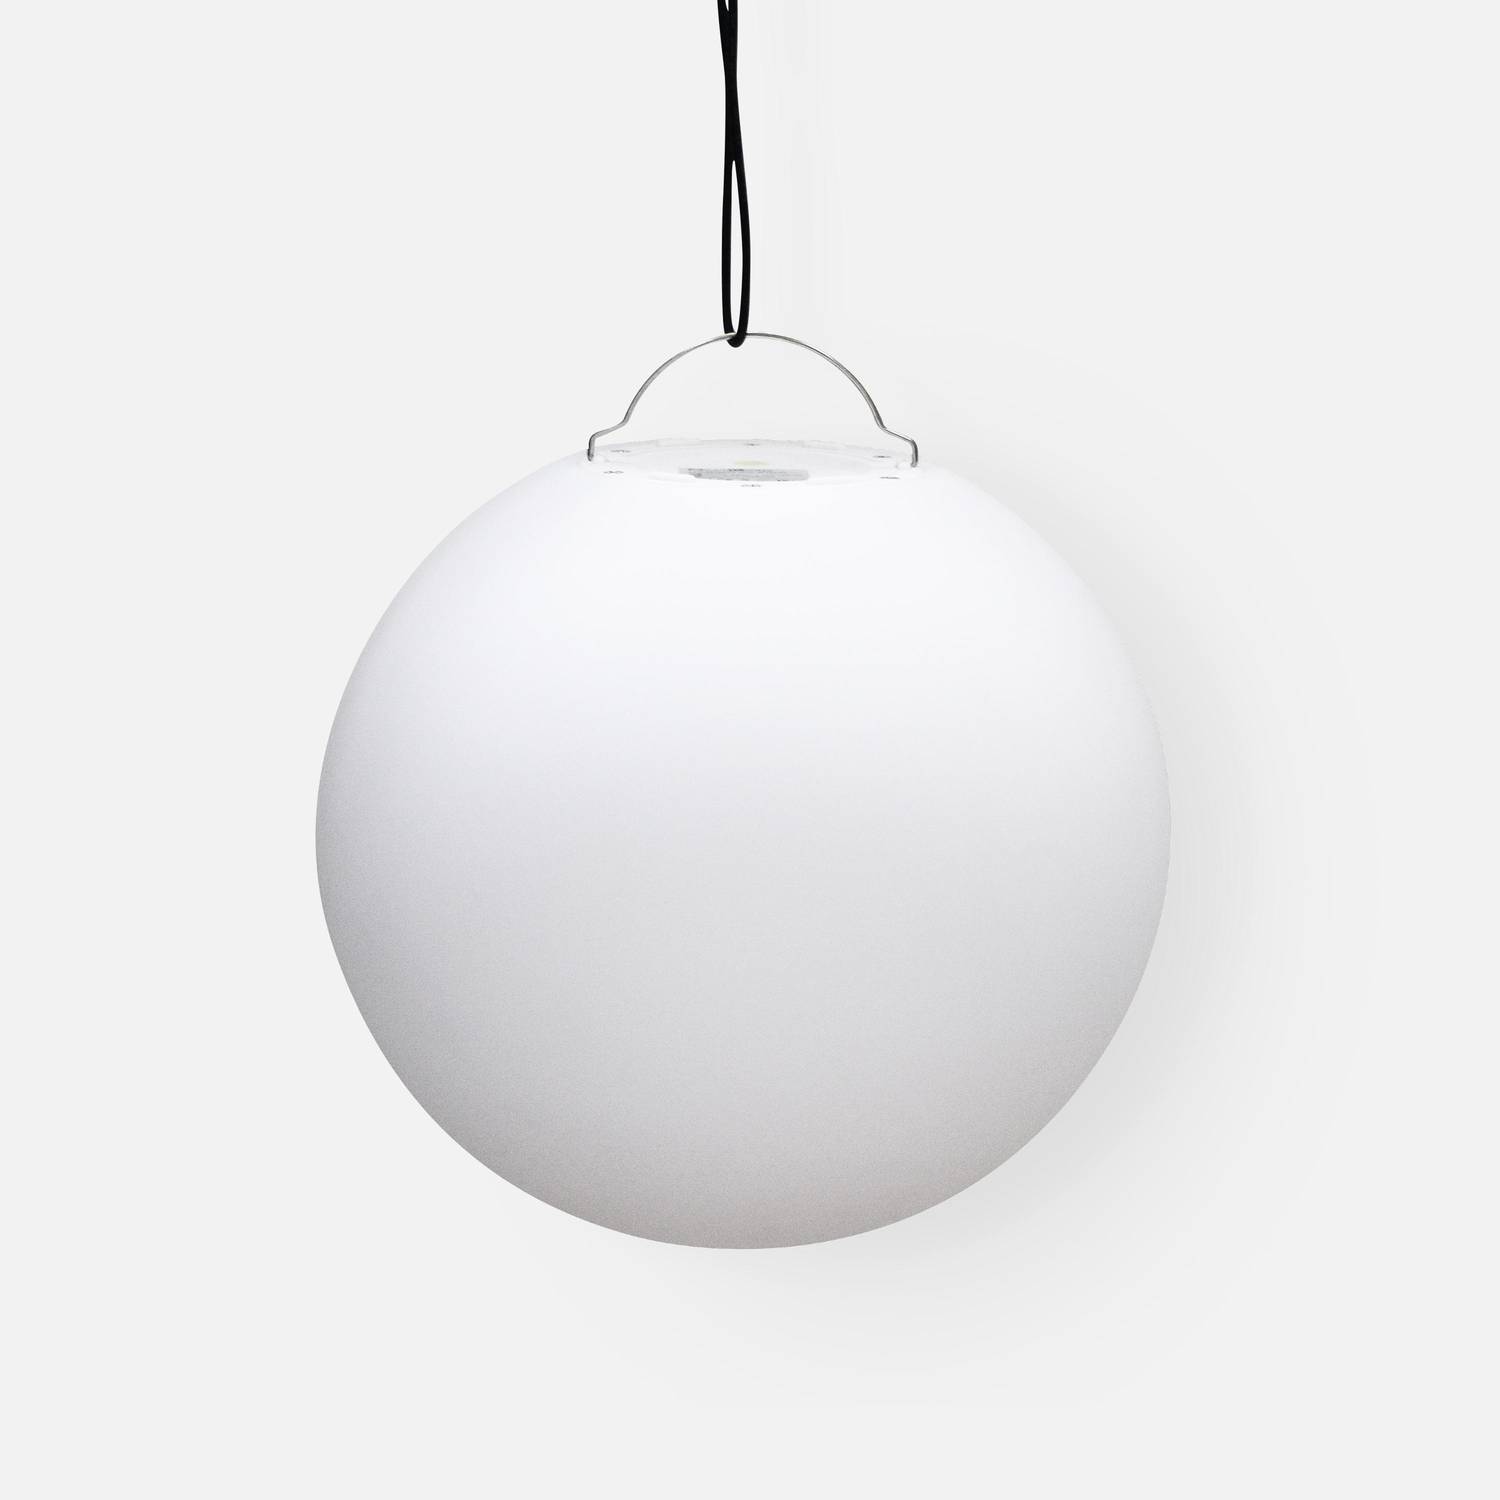 LED Bollamp 40cm – Decoratieve lichtbol, Ø40cm, warm wit, afstandsbediening Photo5